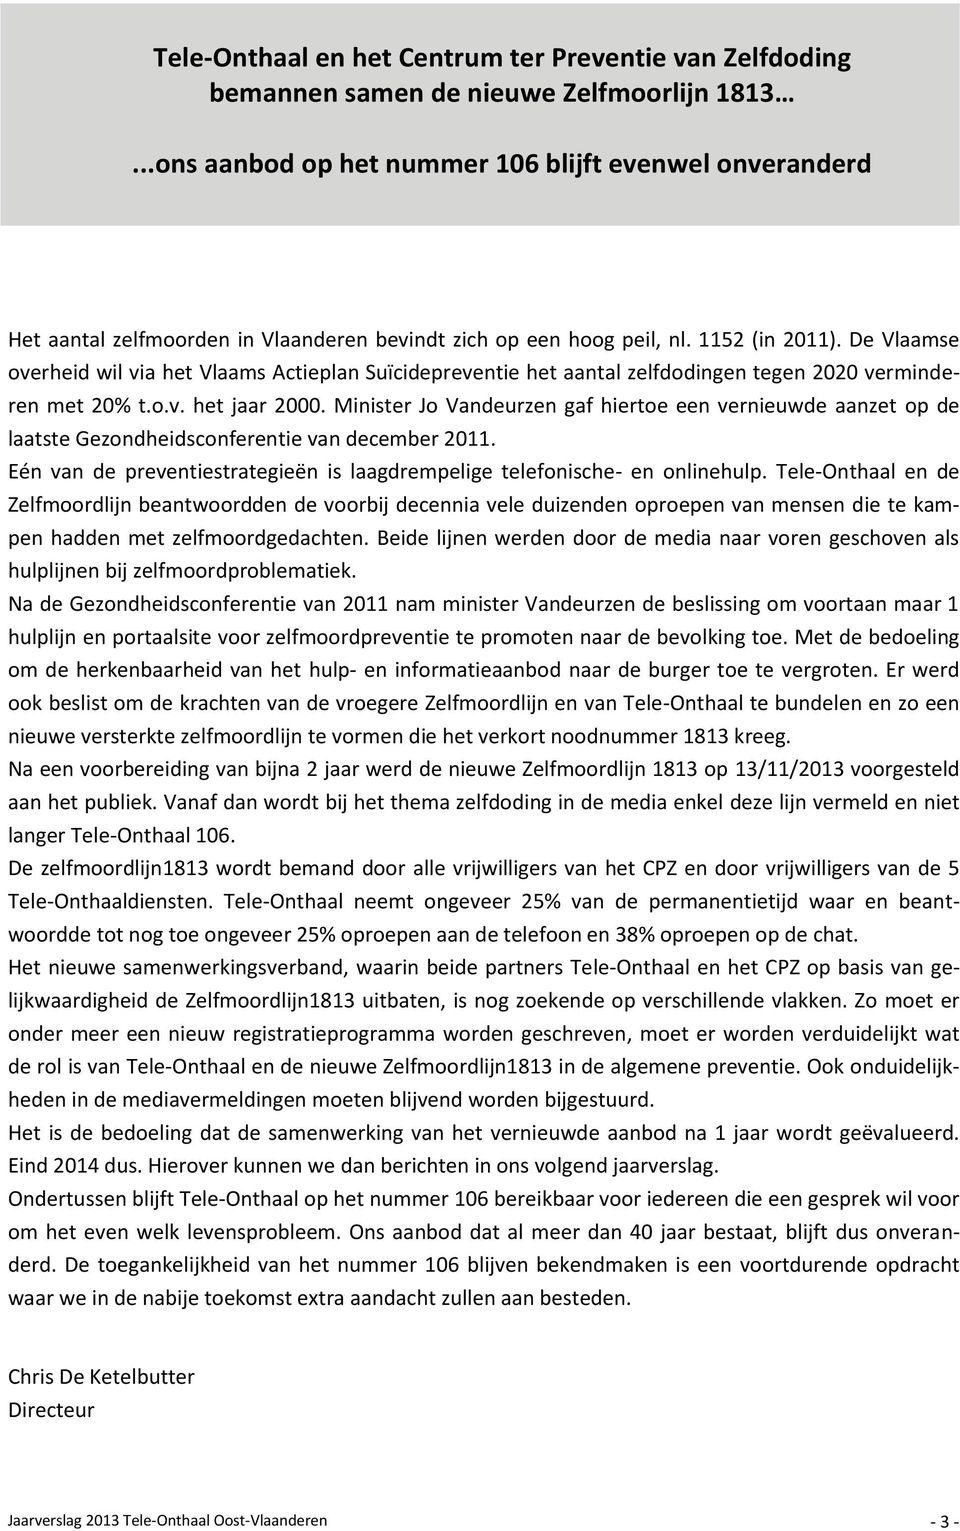 De Vlaamse overheid wil via het Vlaams Actieplan Suïcidepreventie het aantal zelfdodingen tegen 2020 verminderen met 20% t.o.v. het jaar 2000.